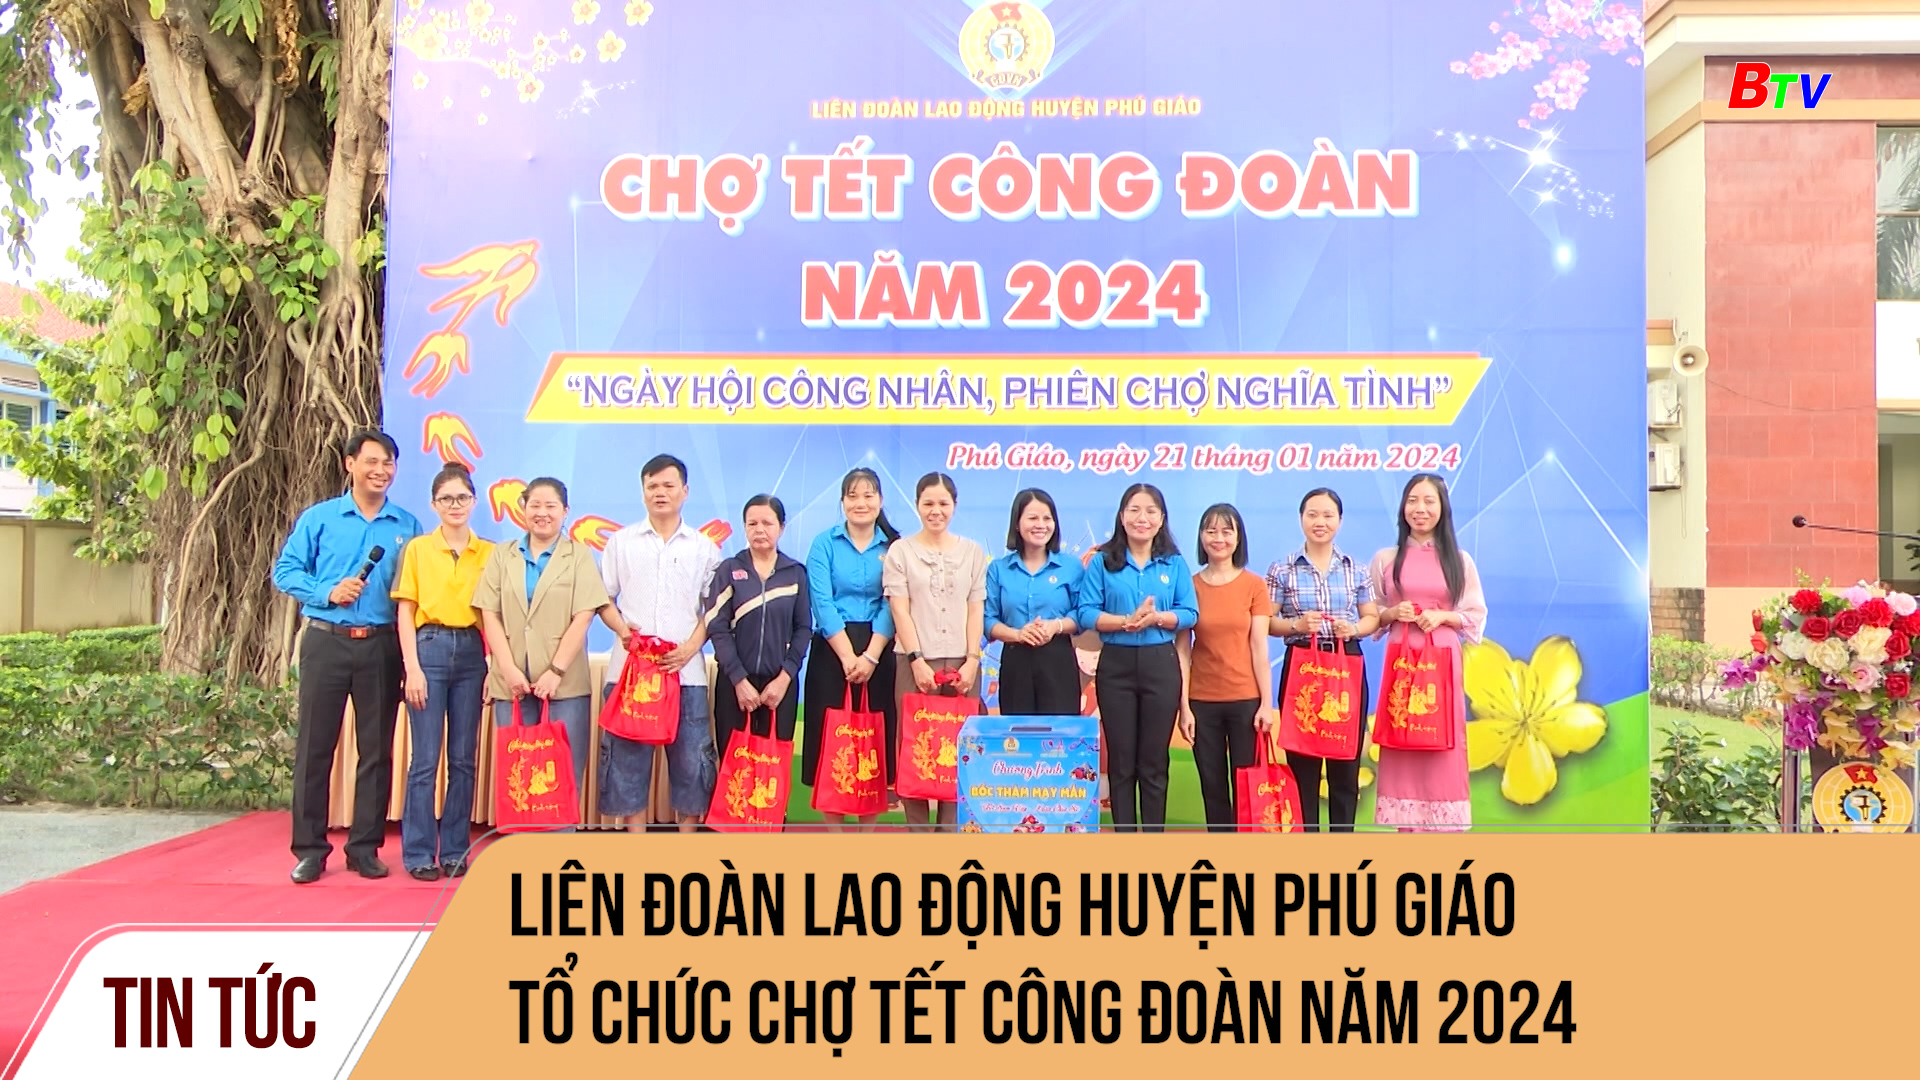 Liên đoàn lao động huyện Phú Giáo tổ chức chợ Tết Công đoàn năm 2024